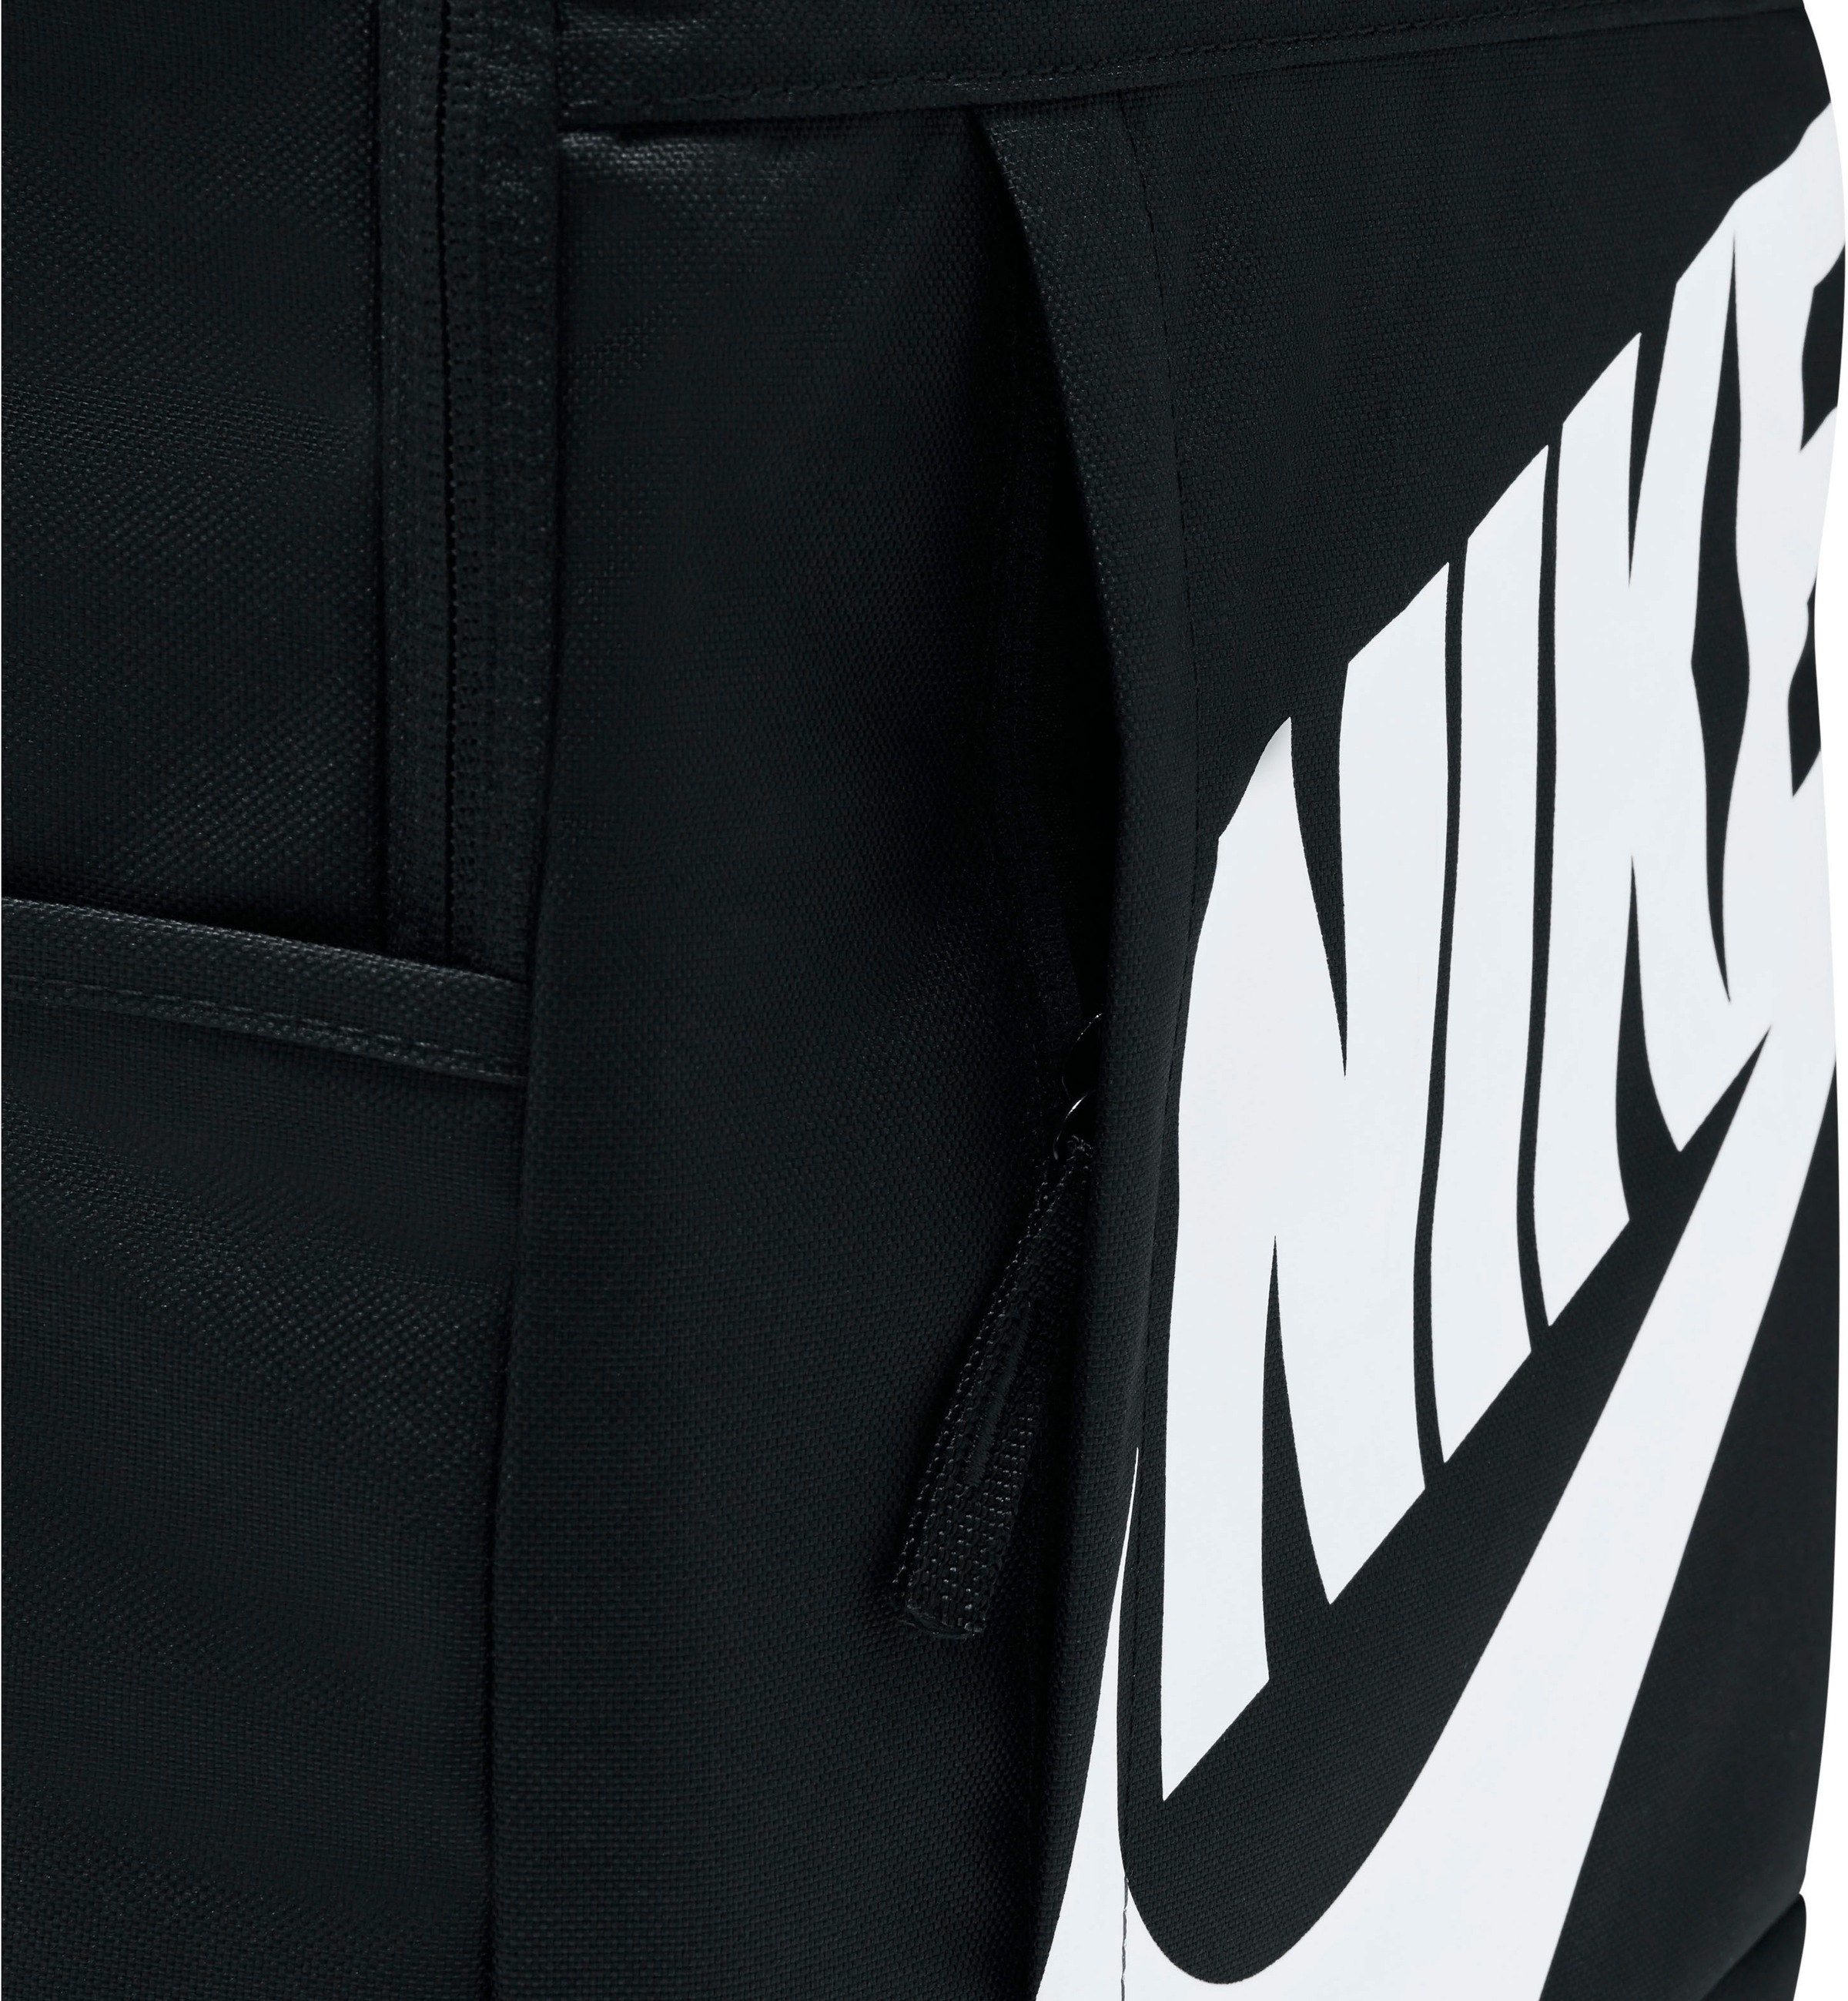 Nike Sportswear Sportrucksack »ELEMENTAL BACKPACK«